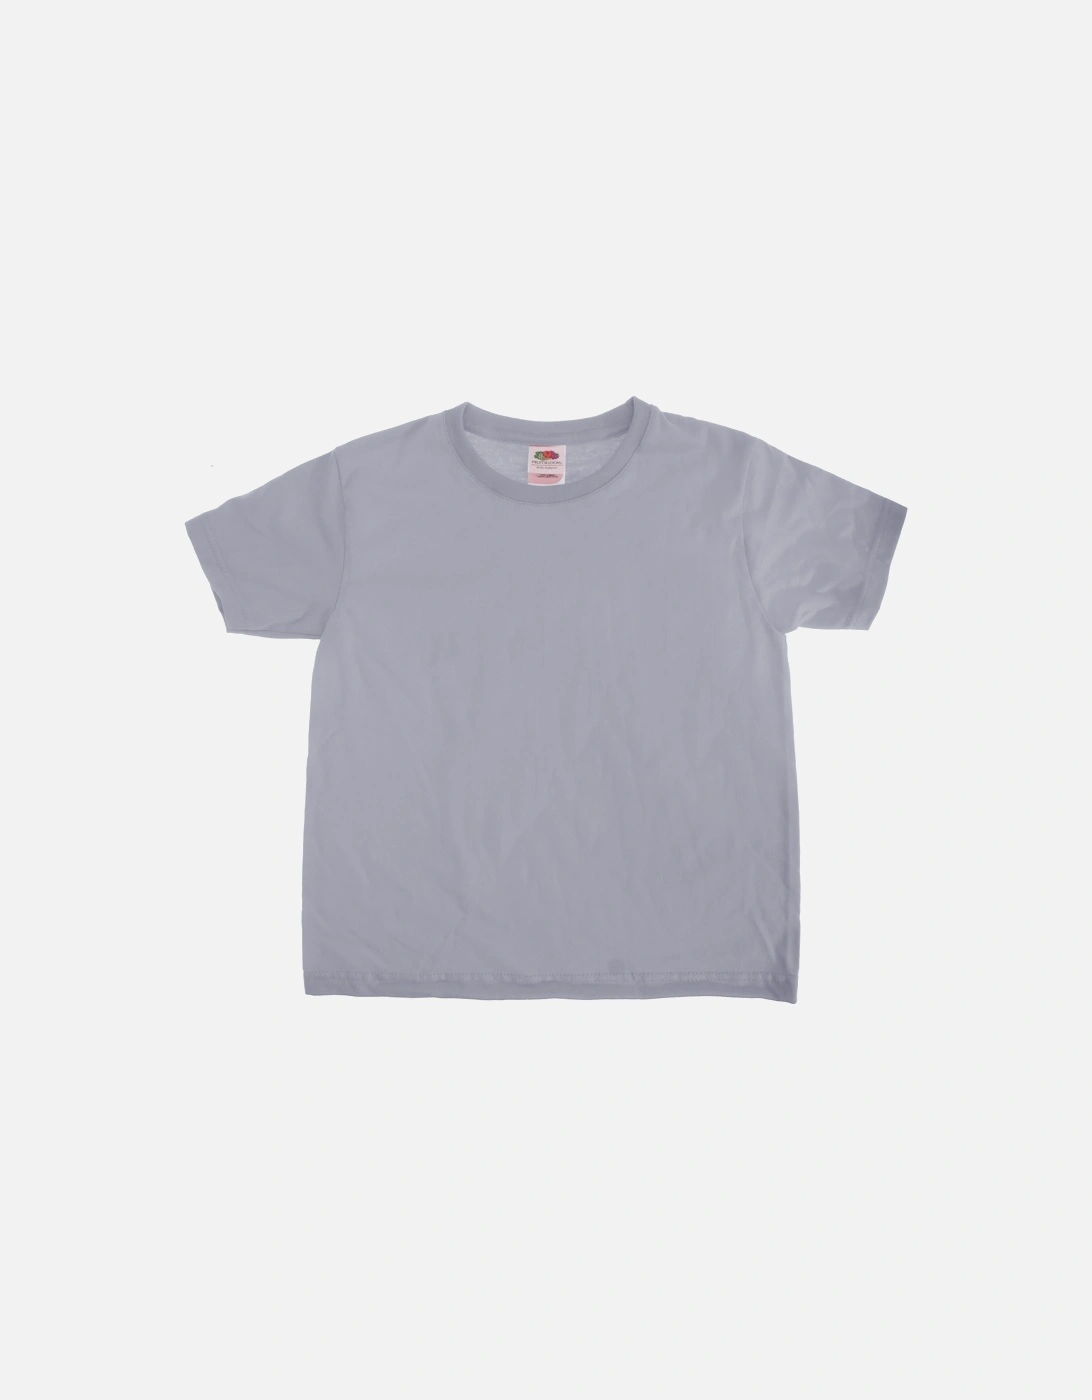 Kids Sofspun Short Sleeve T-Shirt (Pack of 2), 2 of 1